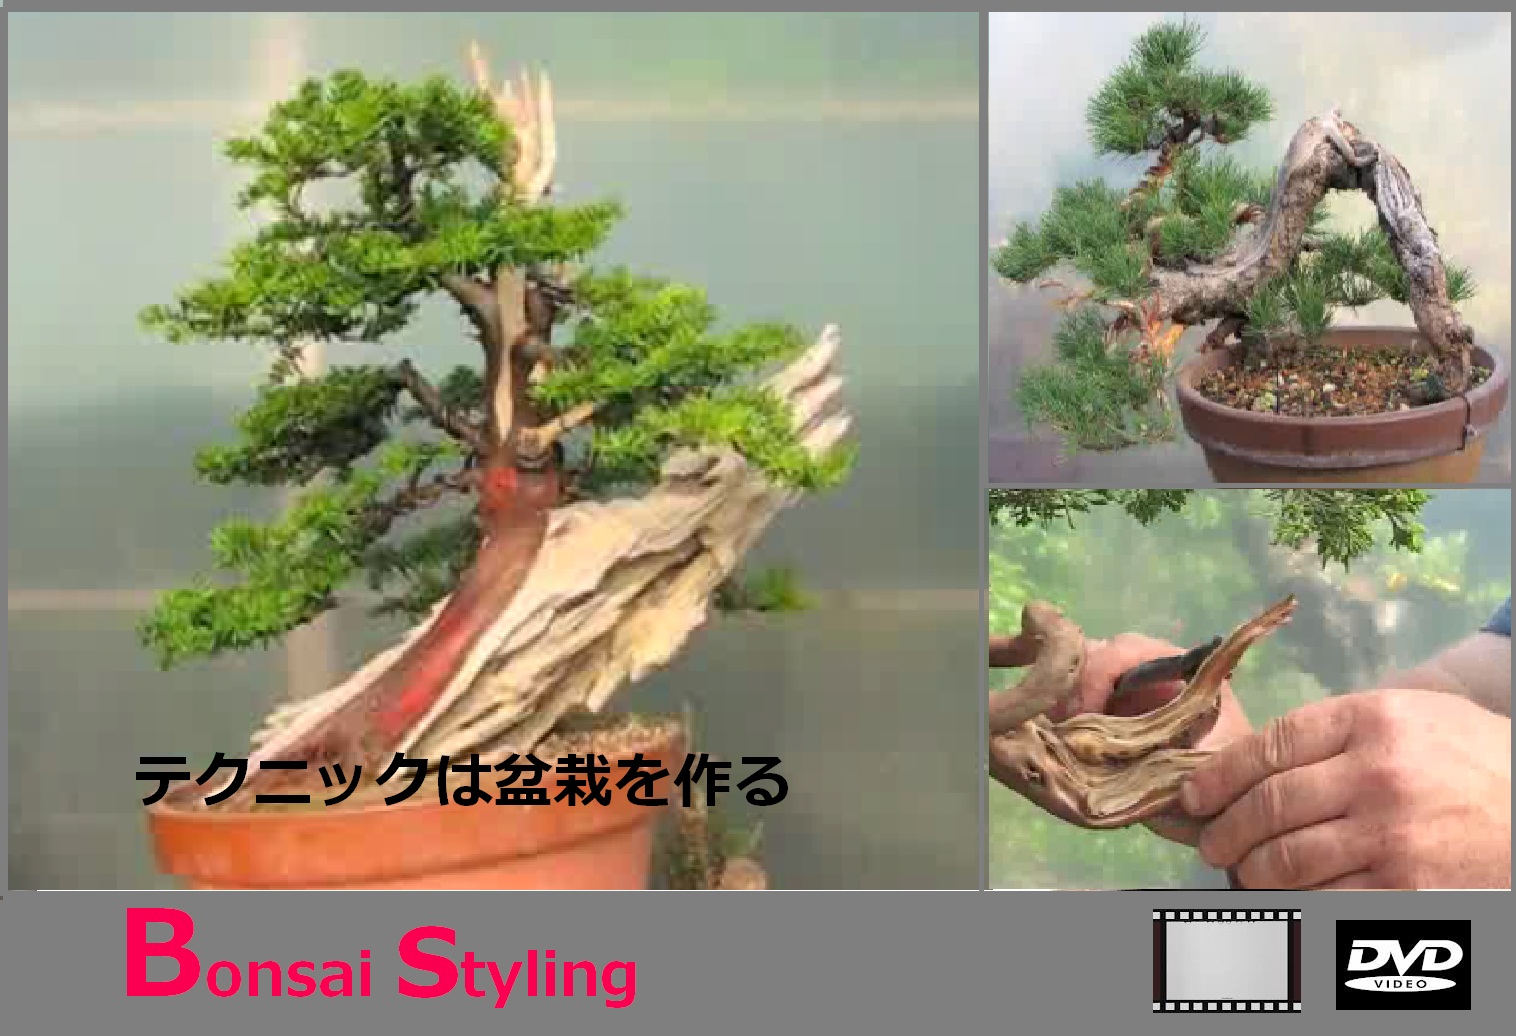  Bonsai  styling Video panduan tehnik membuat bonsai  